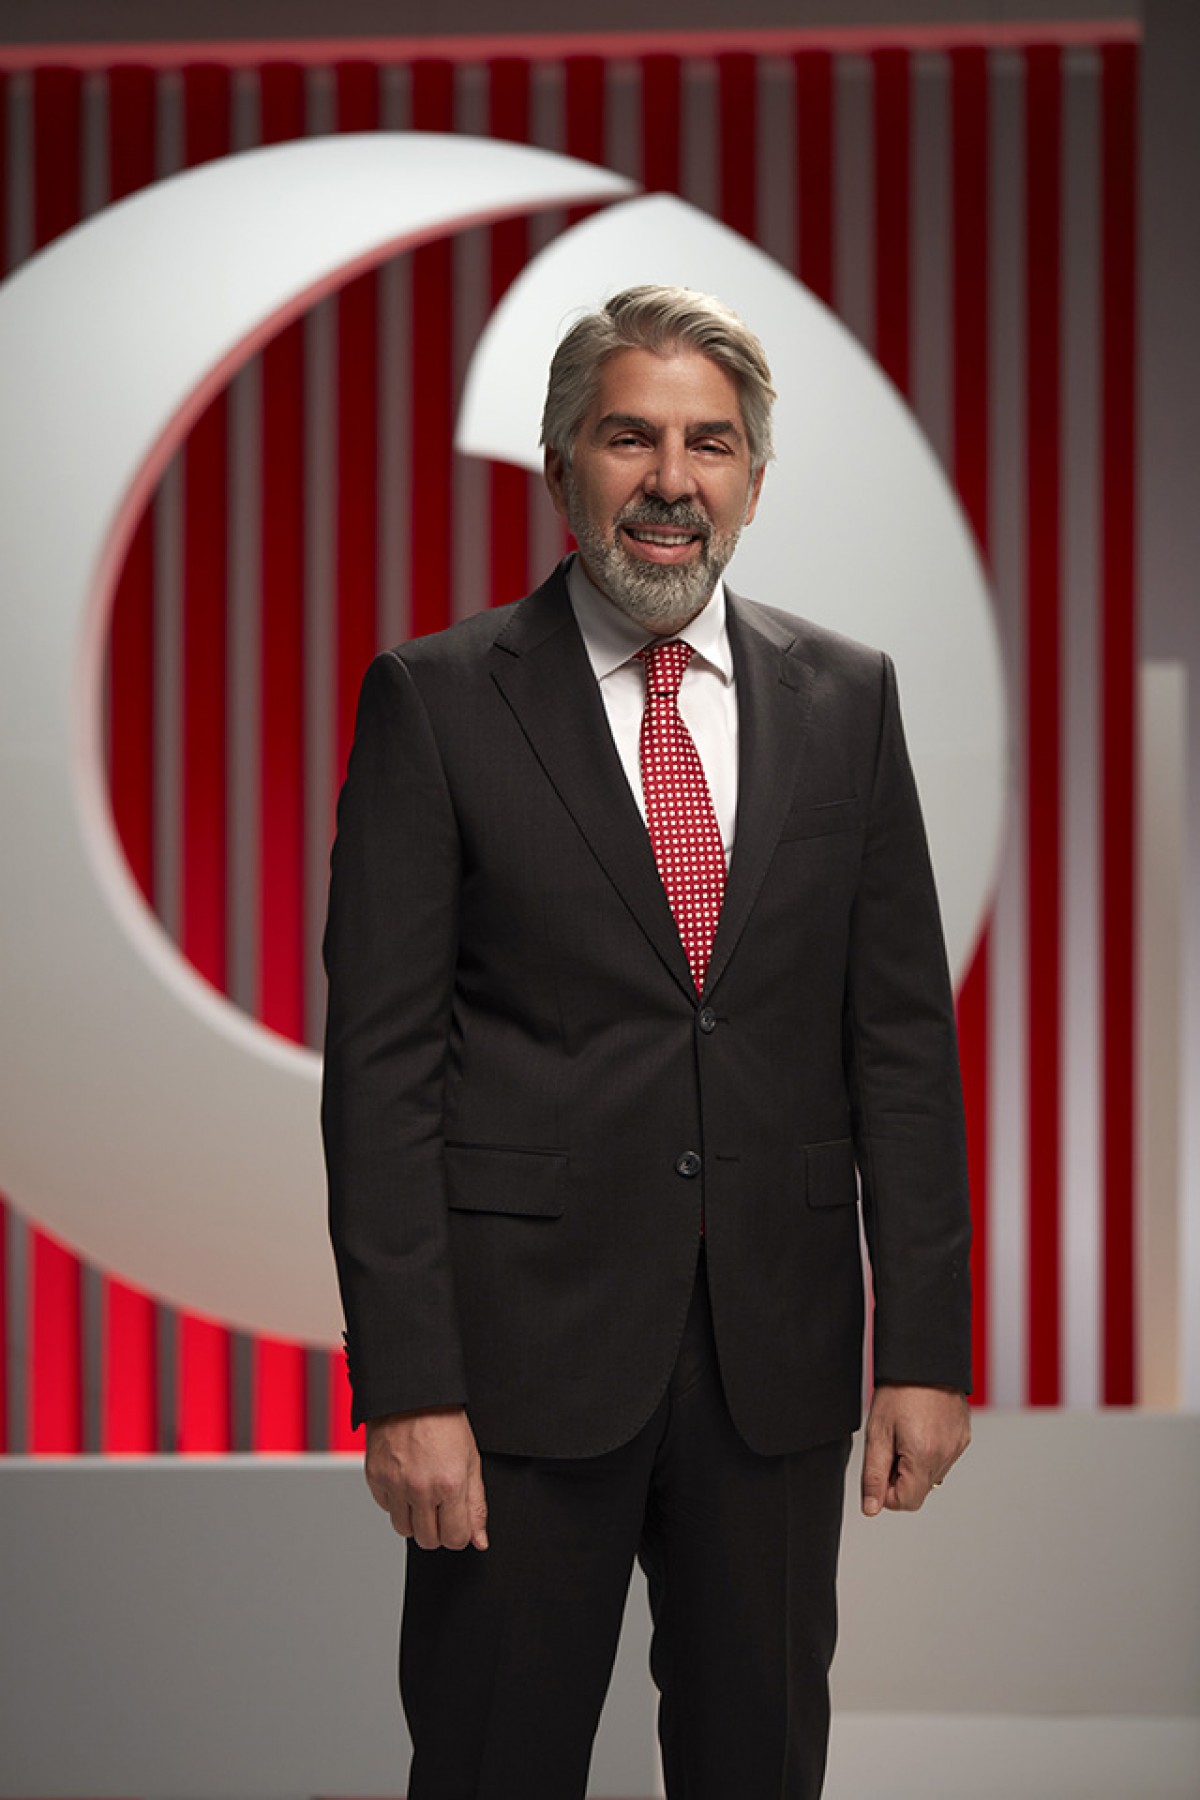 Vodafone Türkiye İcra Kurulu Başkan Yardımcısı Hasan Süel